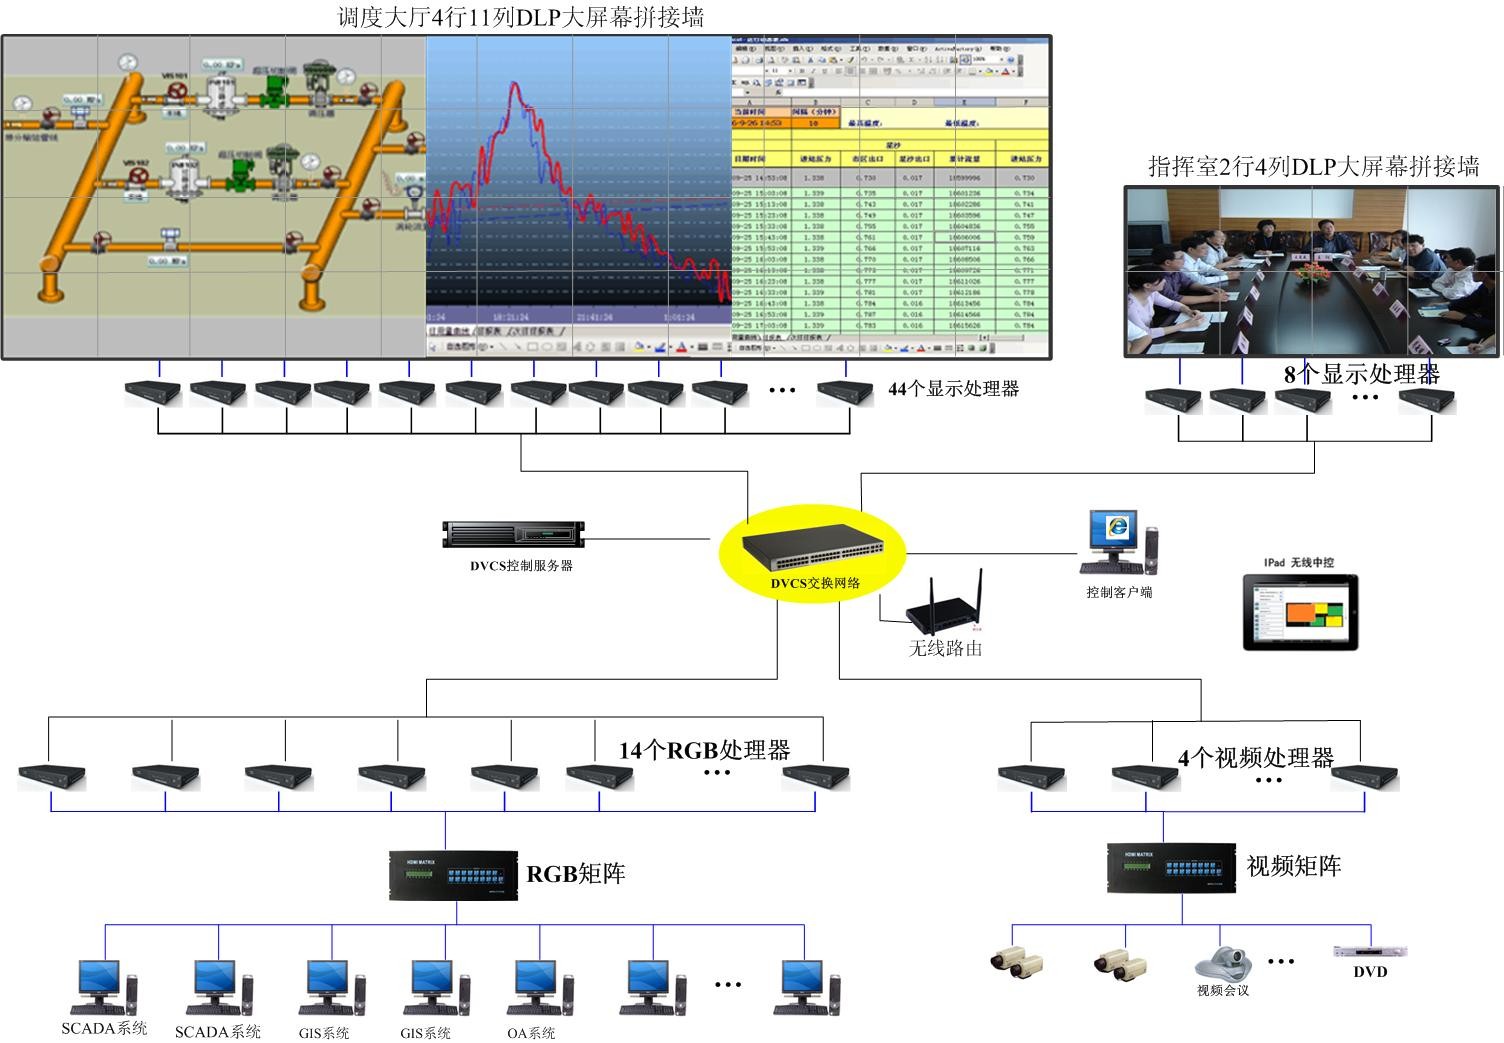 中达电通DLP大屏幕系统助力深圳燃气集团数据中心智能化管理